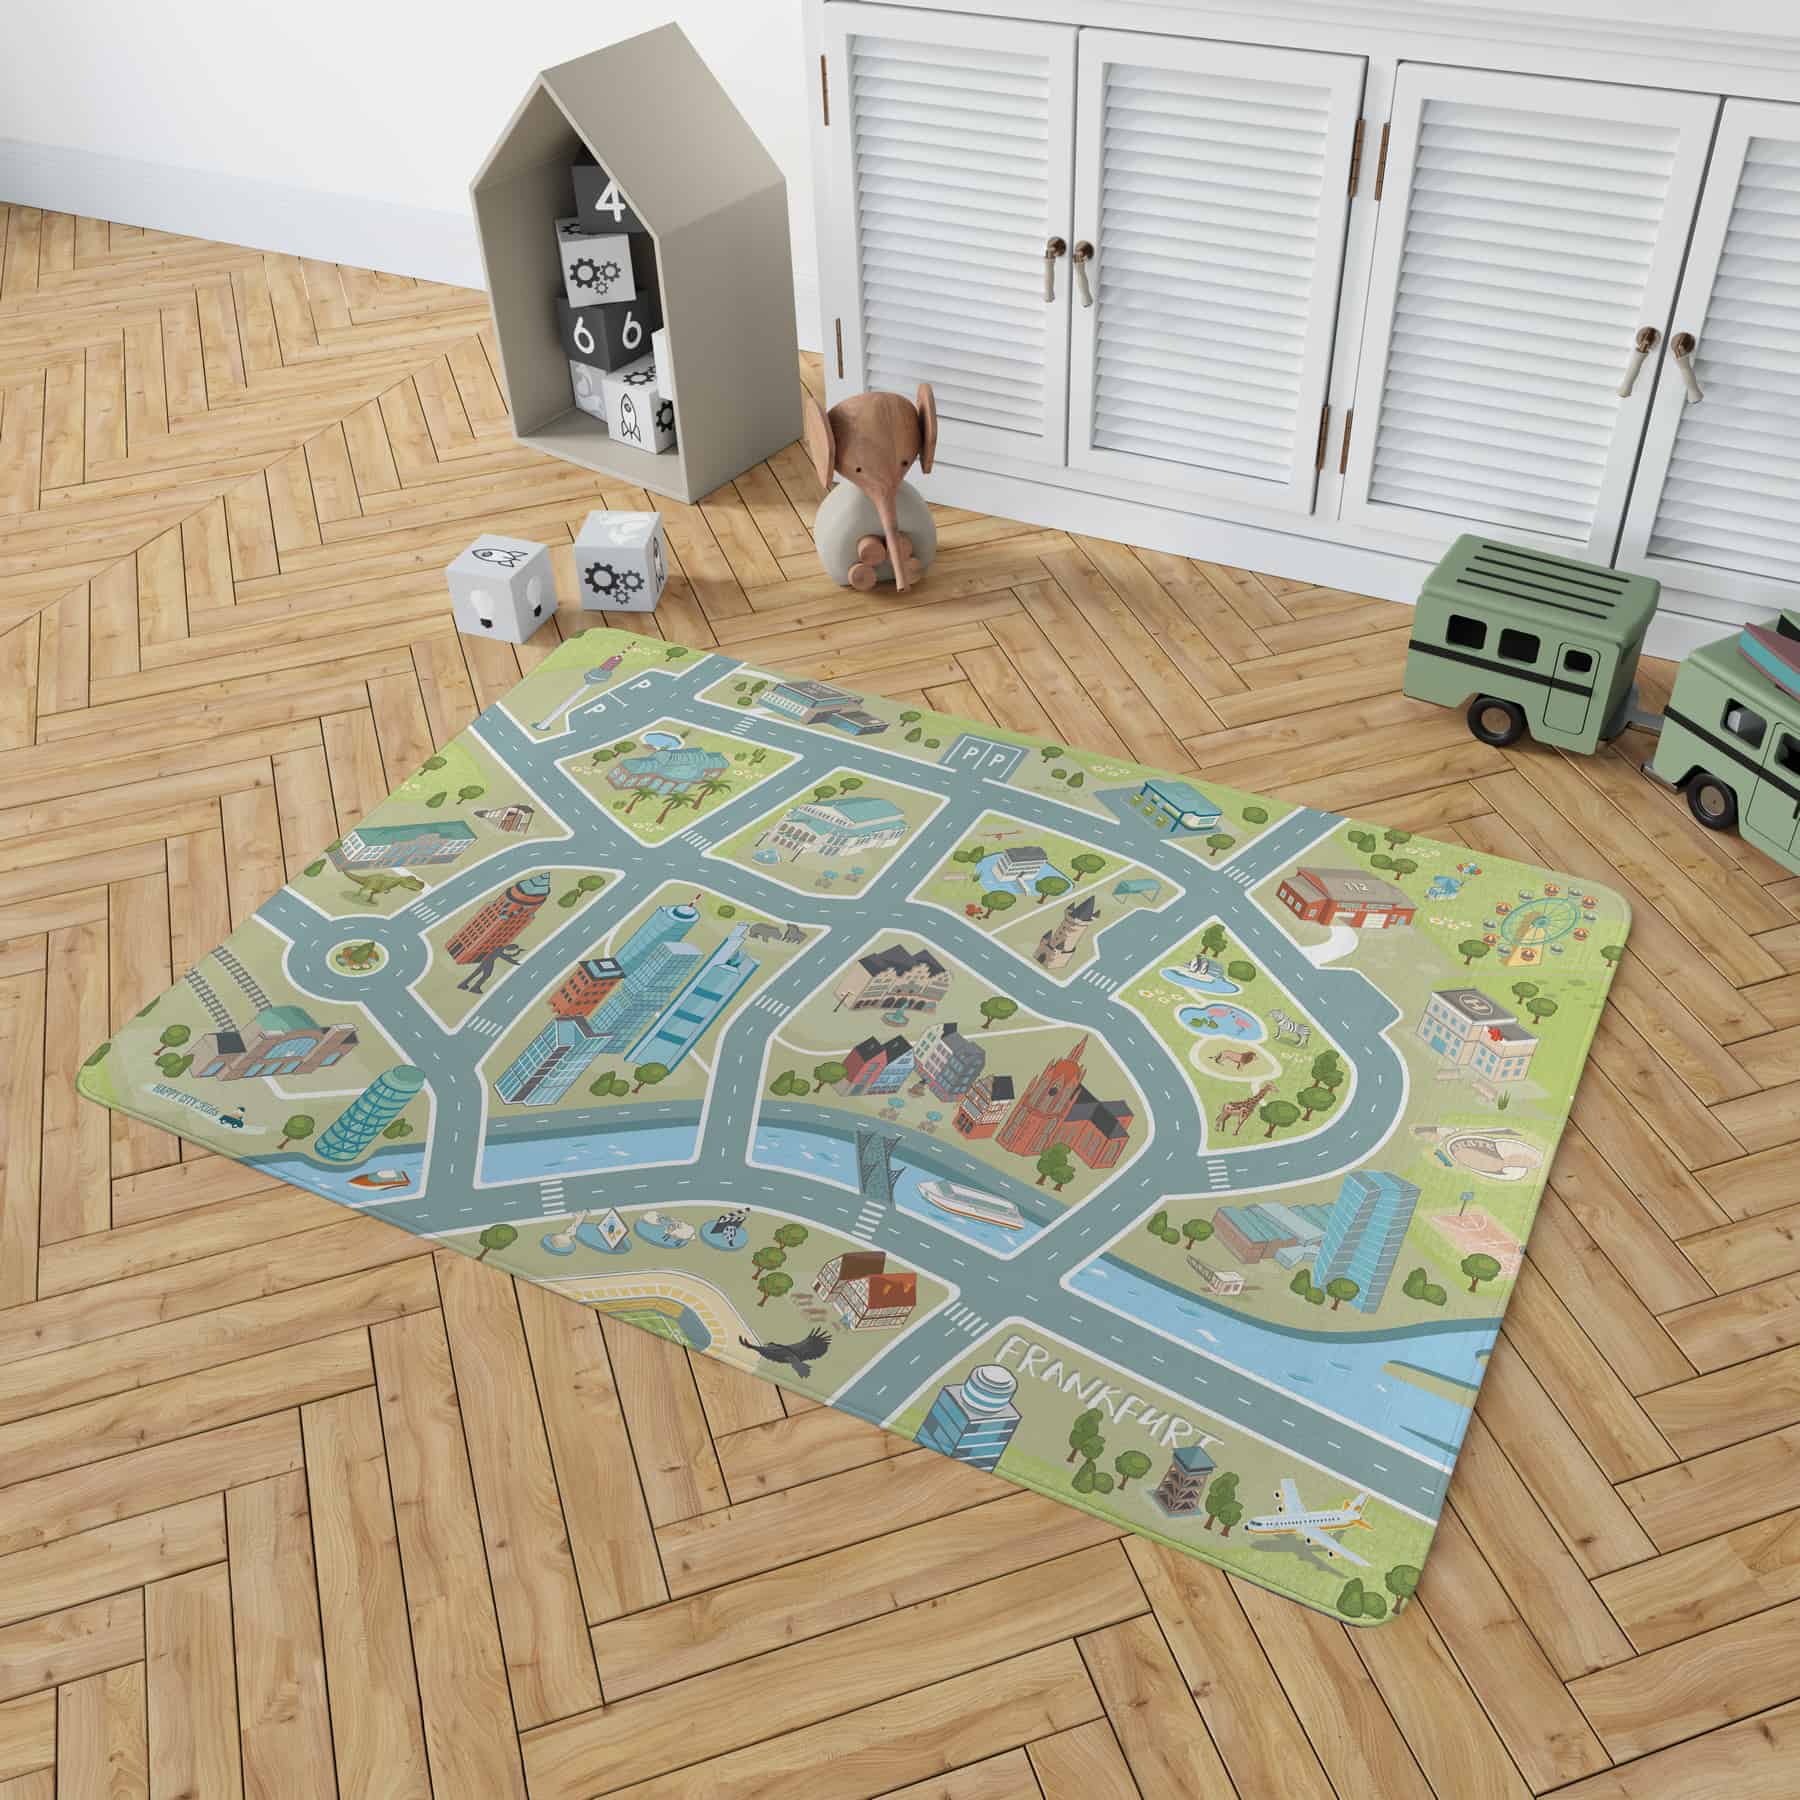 Spielteppich Frankfurt für Kinderzimmer - Autoteppich - Straßenteppich - samtweich-von HappyCITYKids